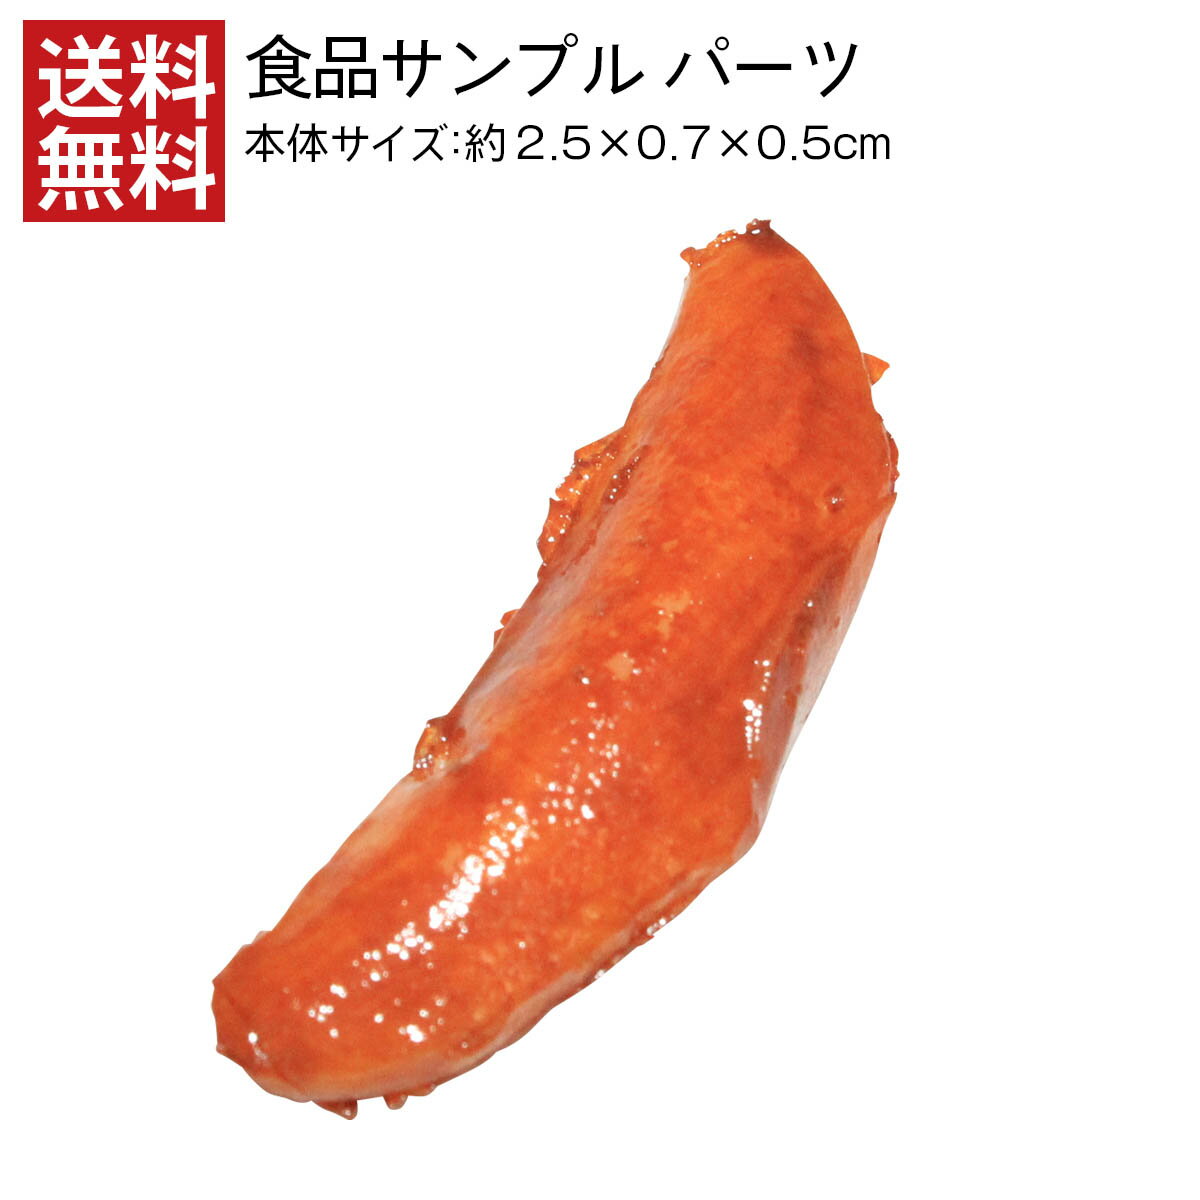 【送料無料】柿の種 食品サンプル パーツ 料理模型 リアル 日本製 高品質 お供え 展示 お菓子 フェイクフード 小道具 食品模型 フードサンプル 工作 ミニチュア サンプル品 アート